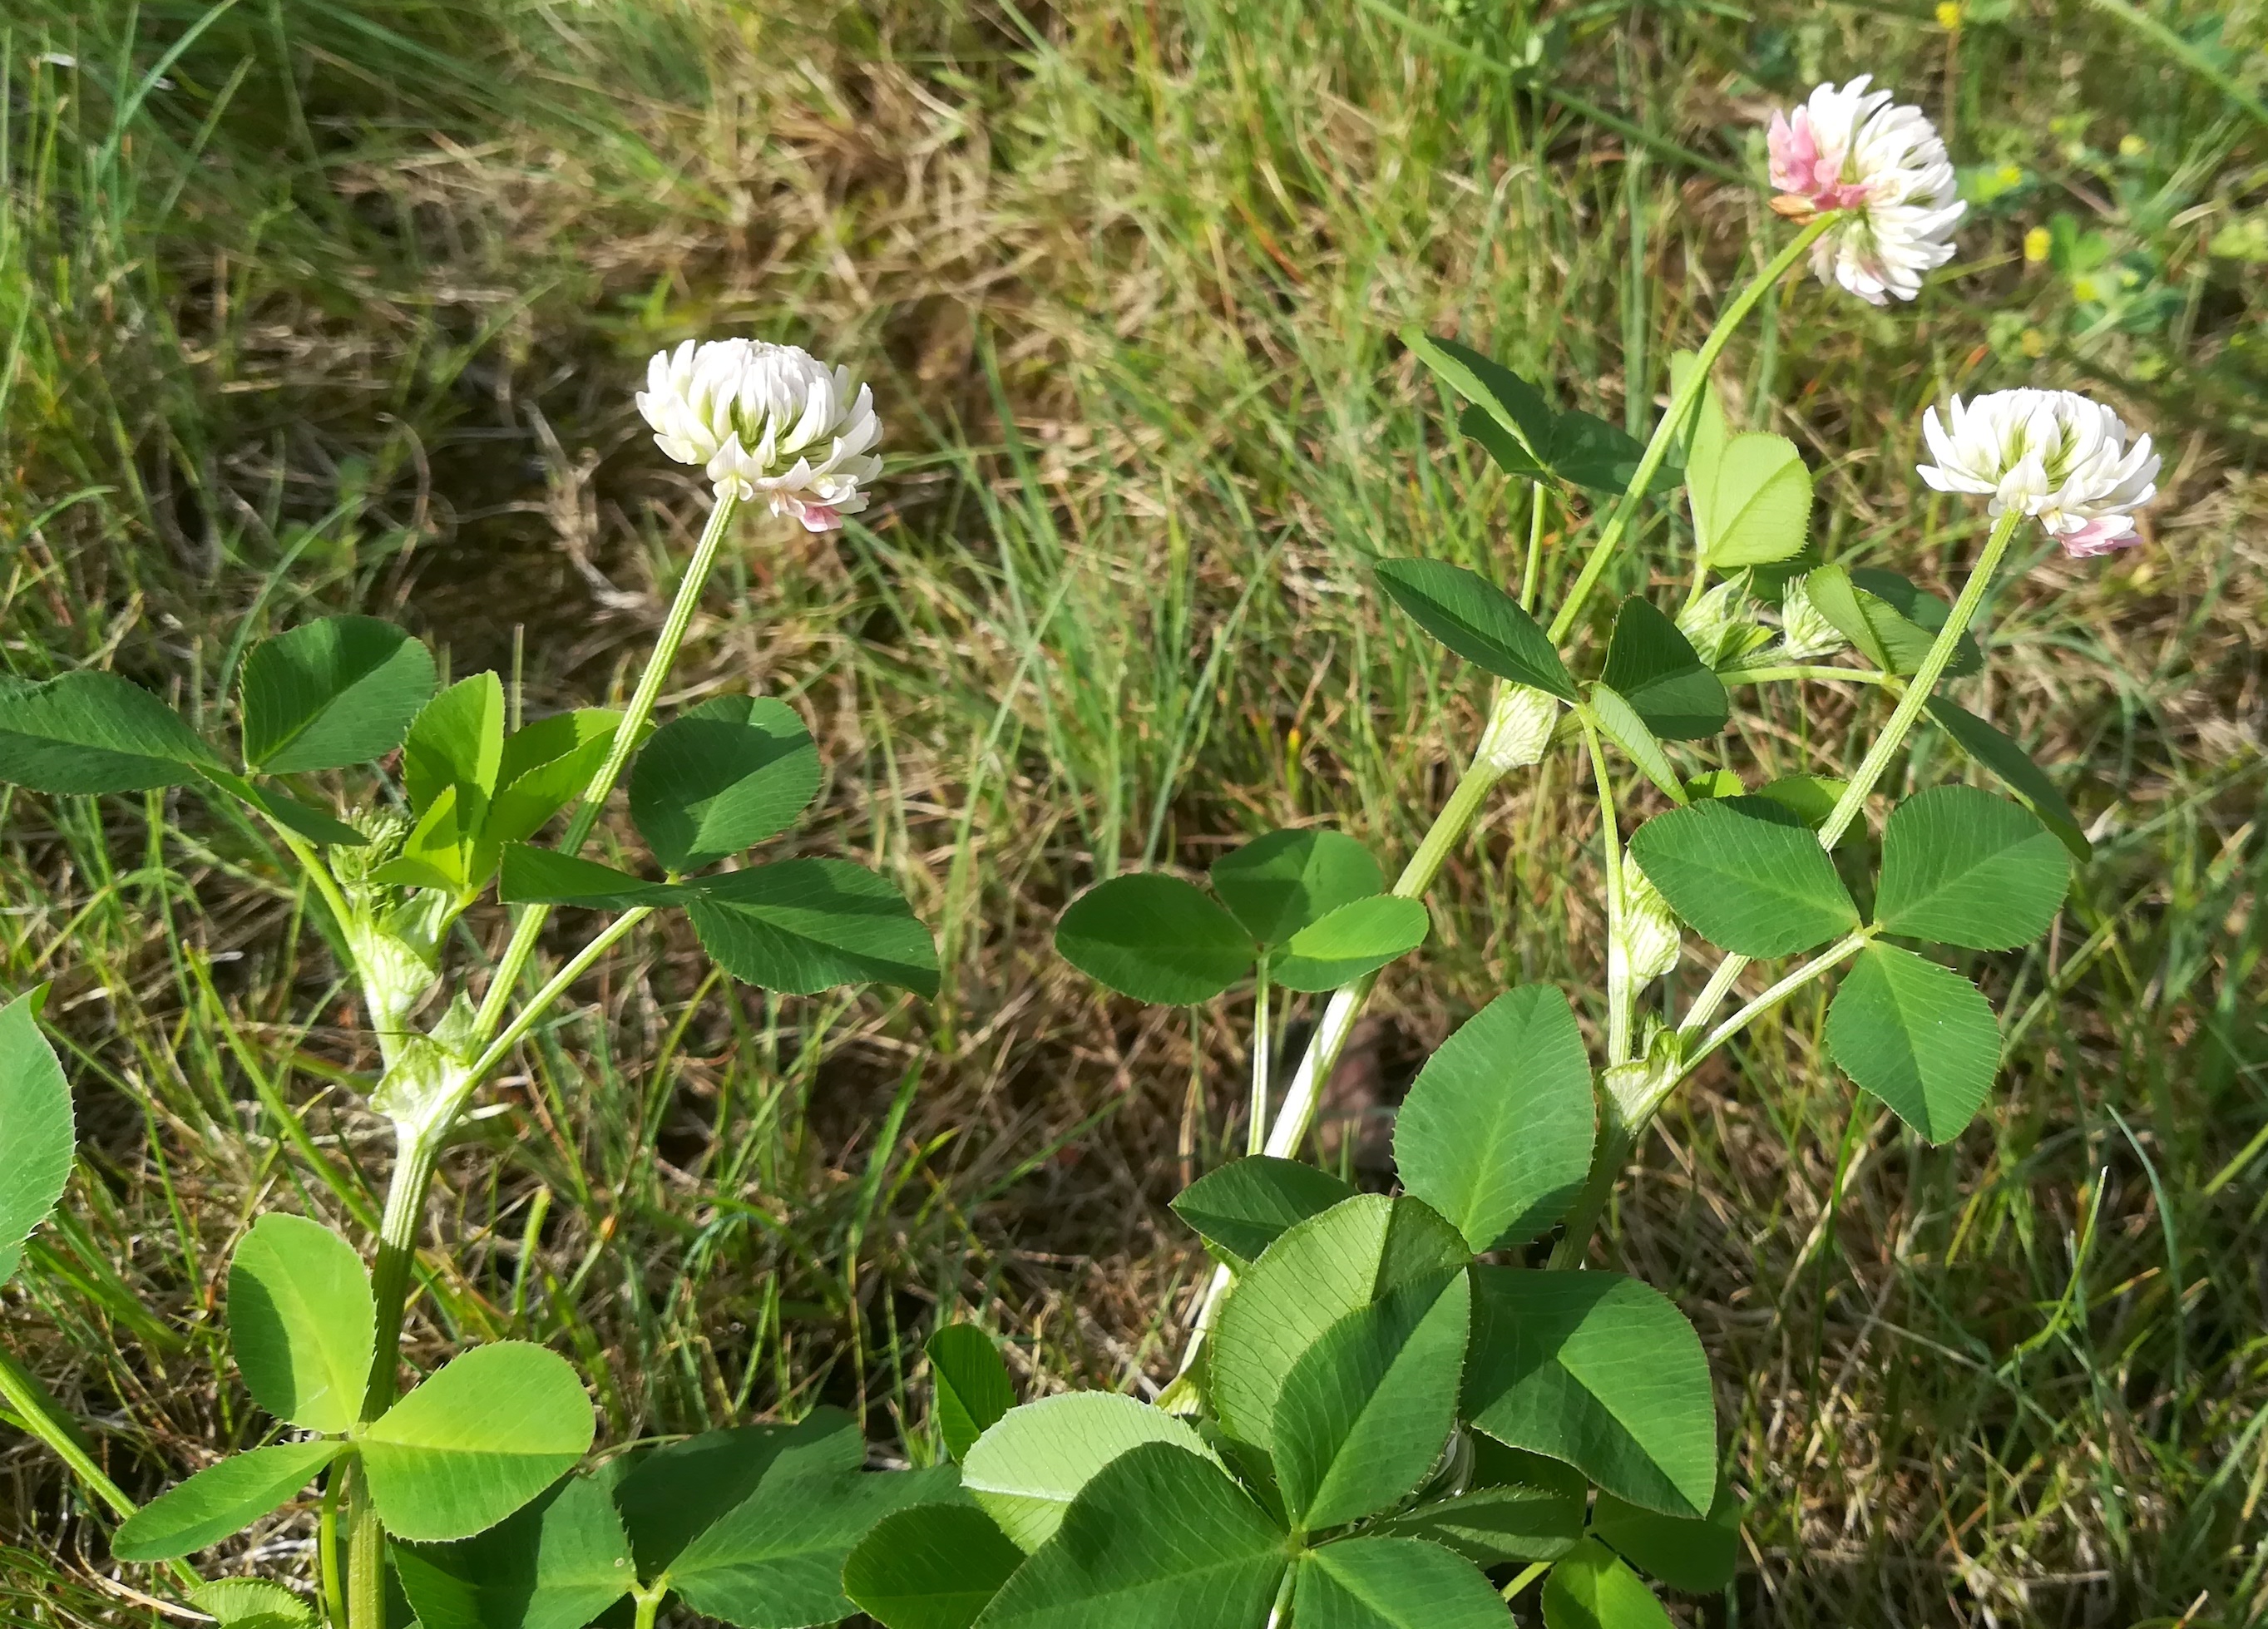 trifolium pratense subsp. pratense f. alba maria ellend kalvarienberg_20200622_091336.jpg